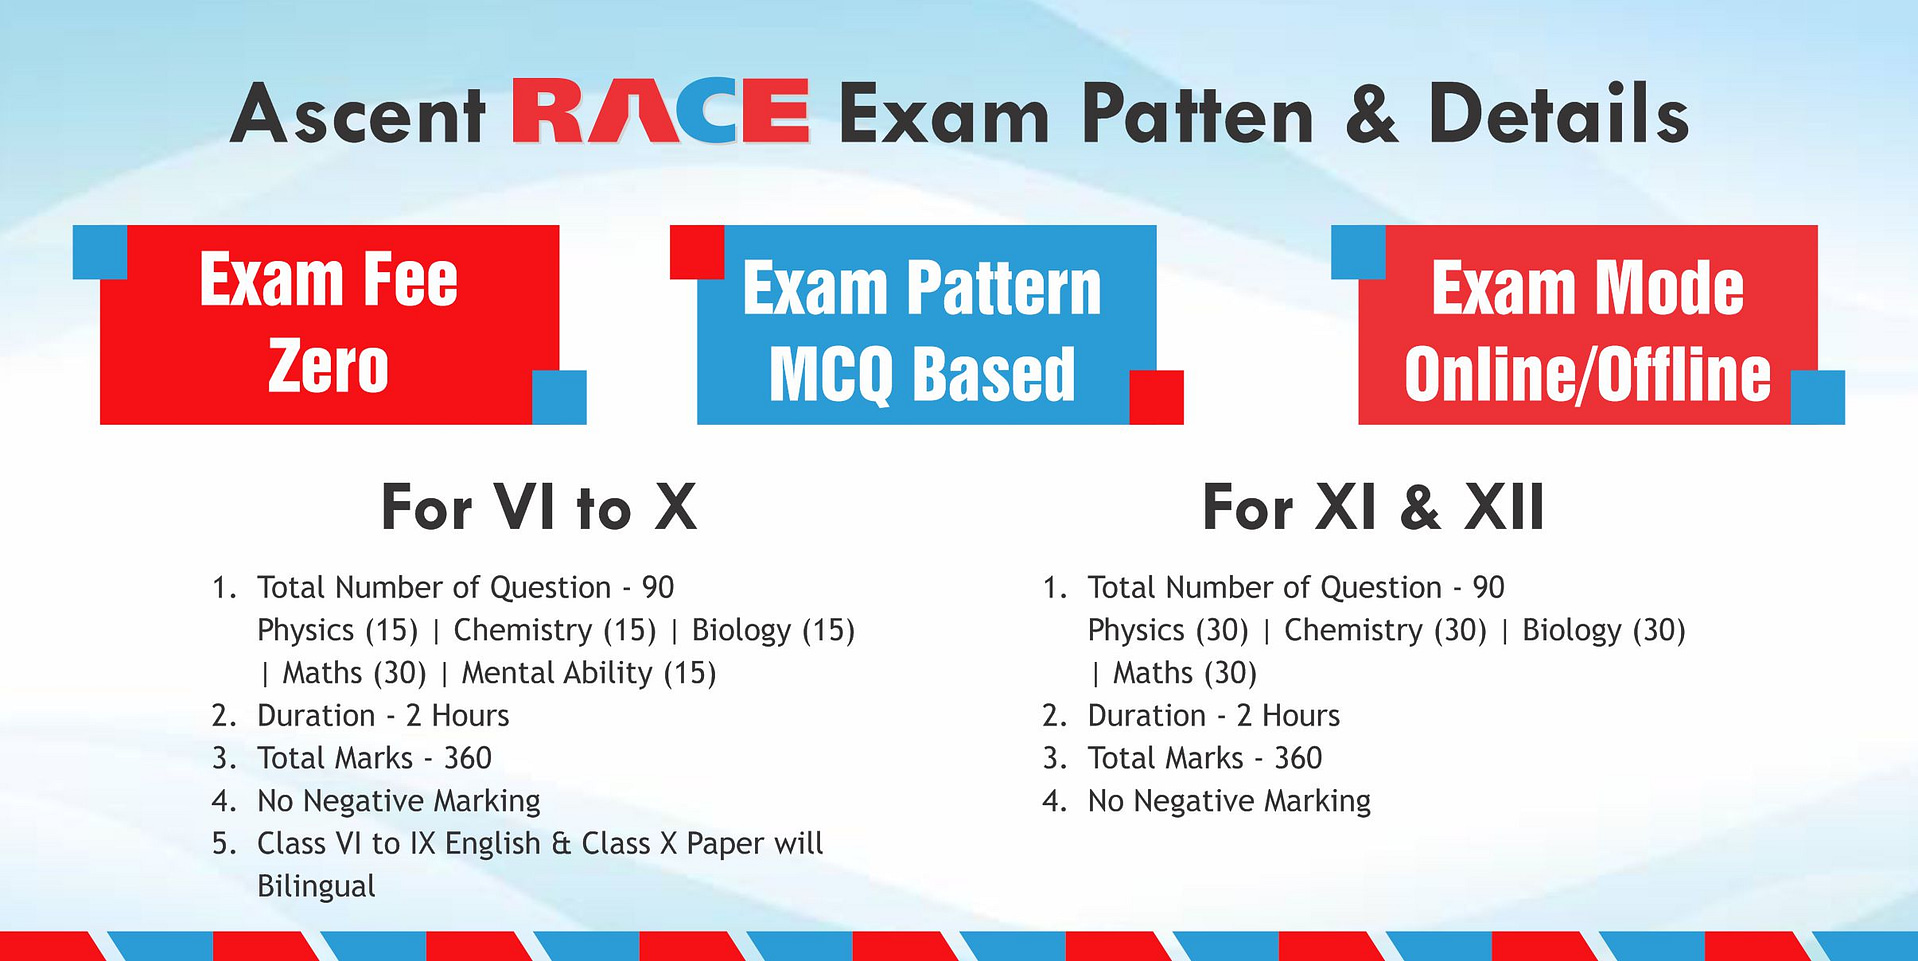 Ascent RACE Exam Pattern & Details